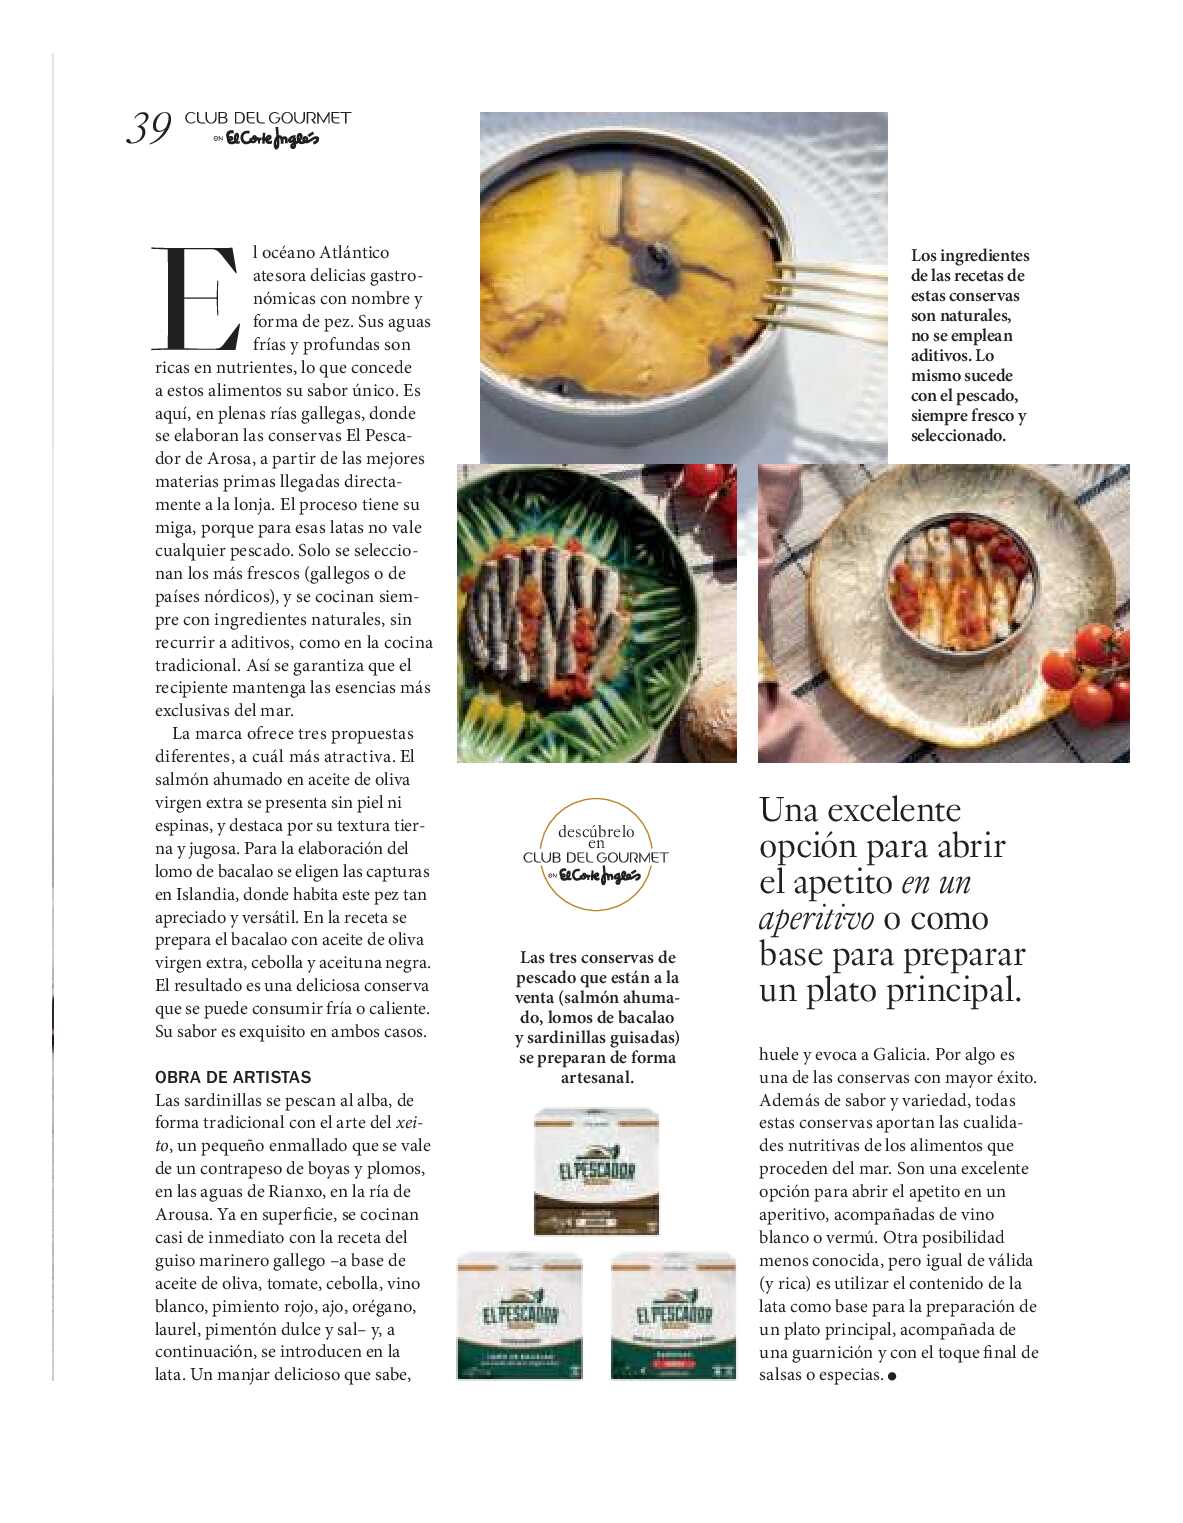 Gourmet magazine El Corte Inglés. Página 39